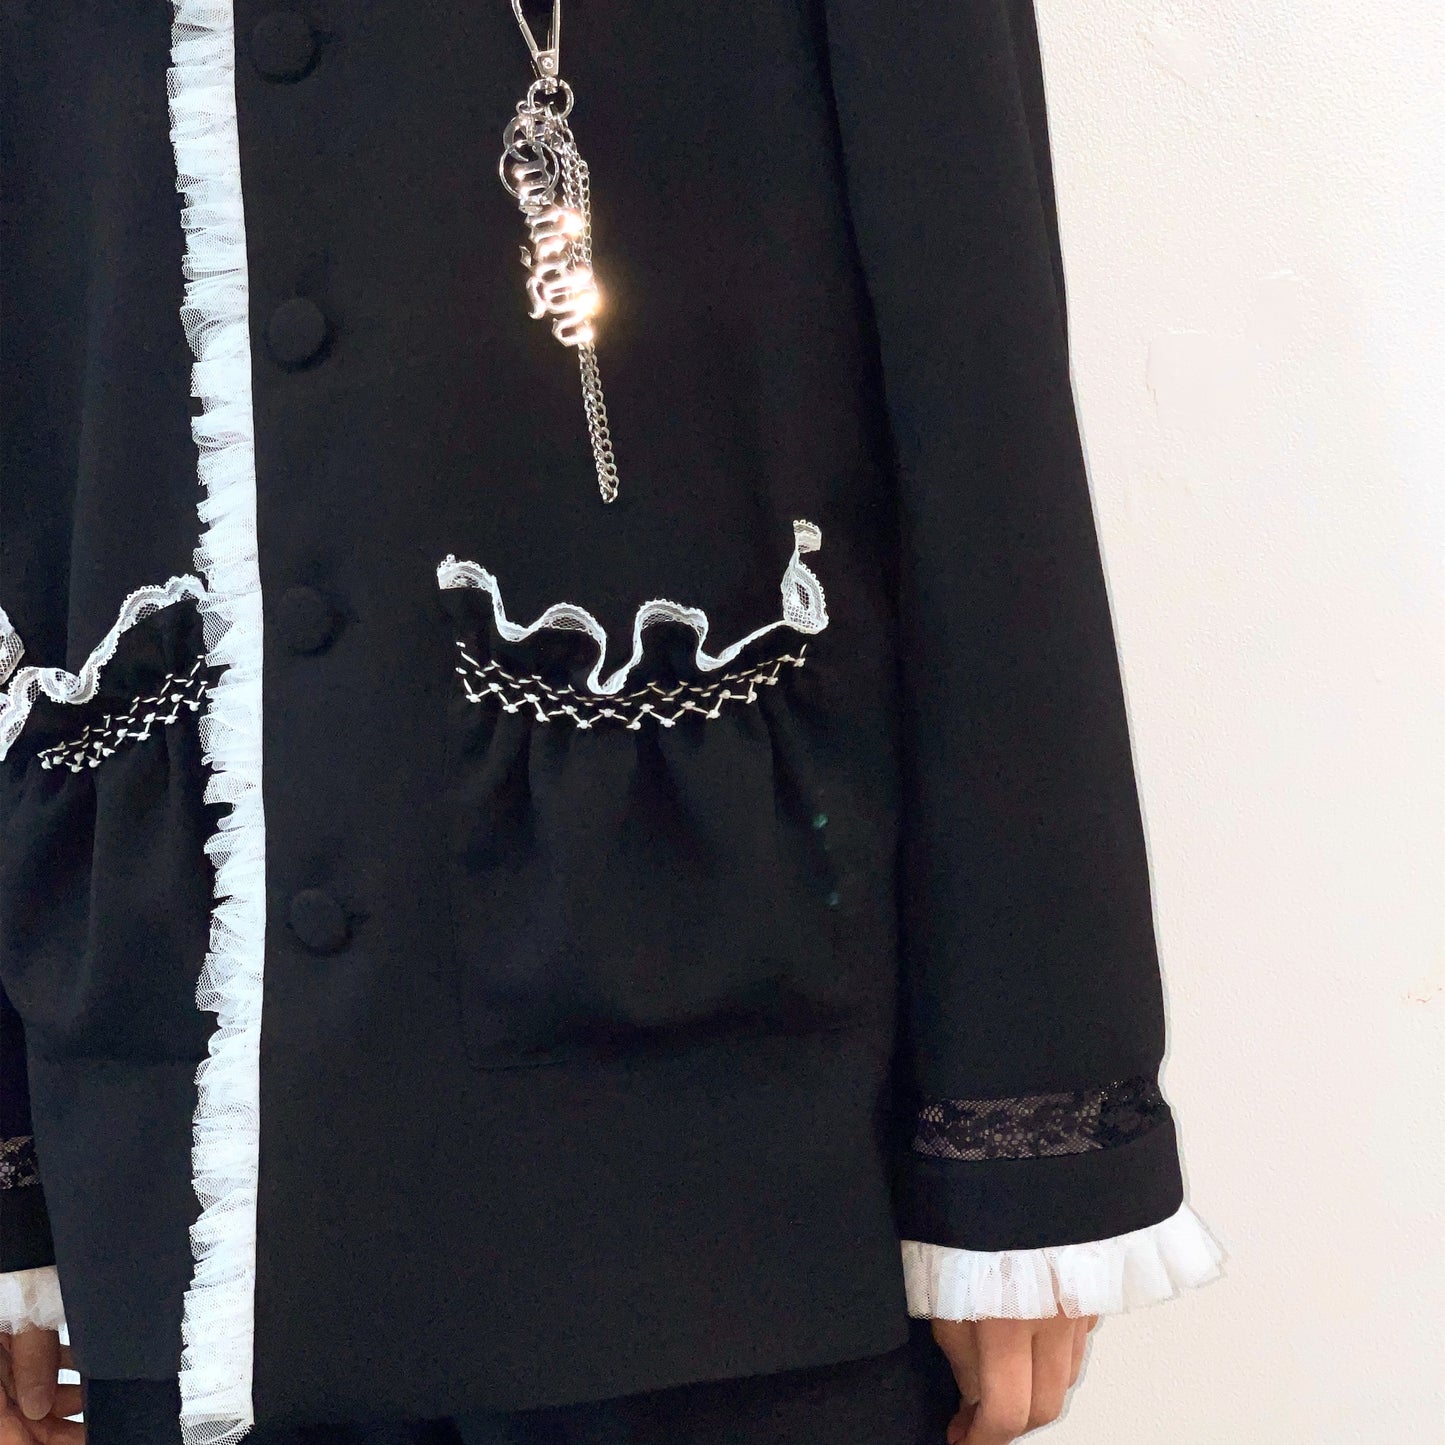 Wool-like lace jacket / Black / ノーカラーレースジャケット